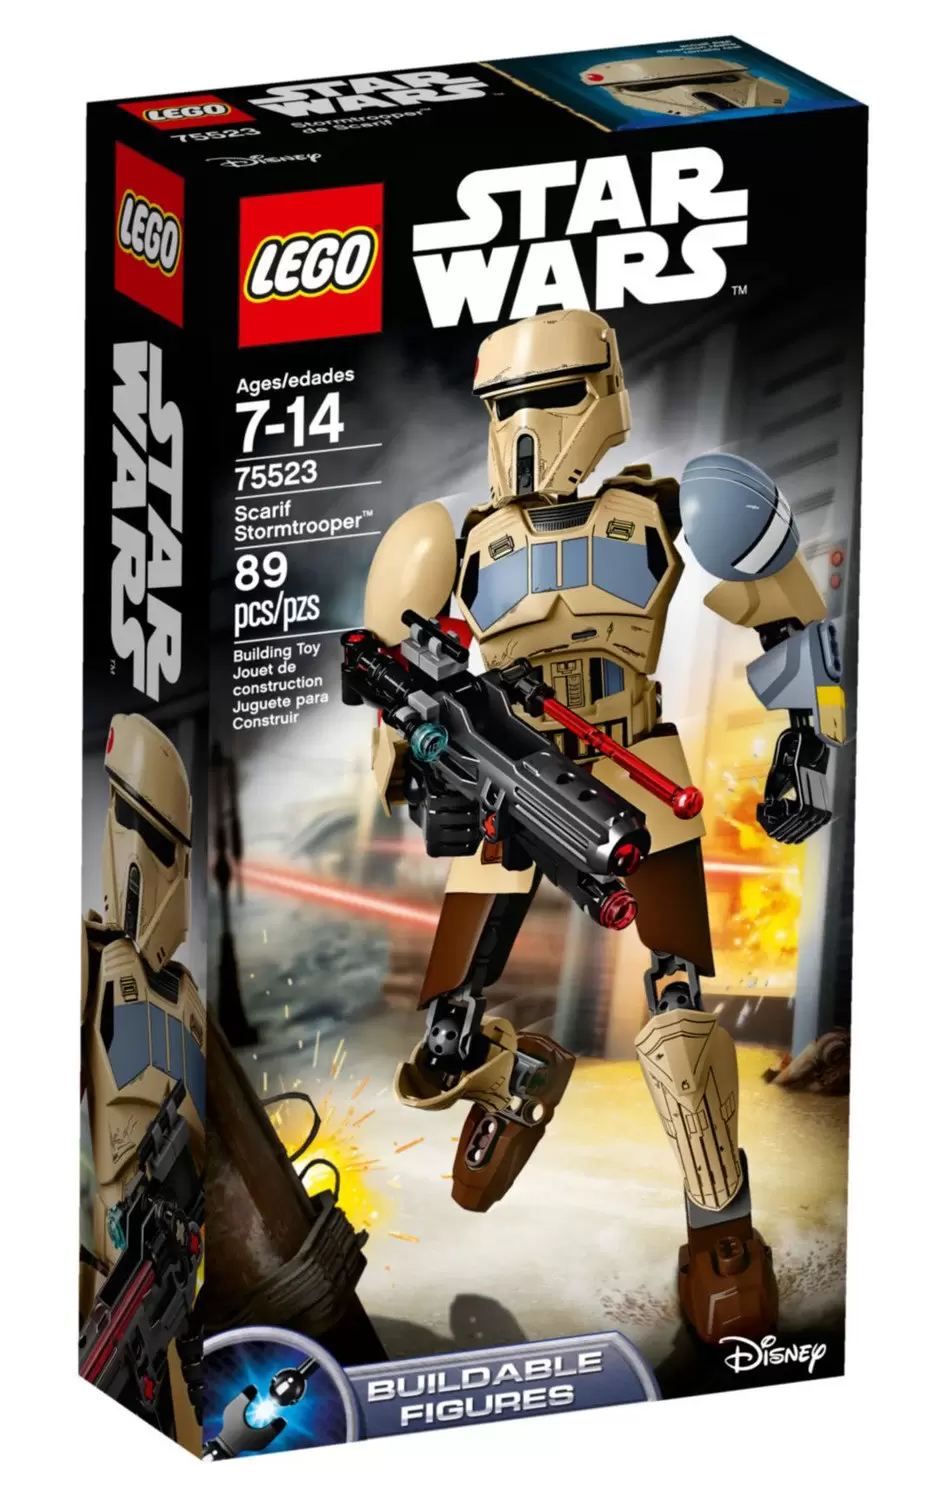 Sticker 131-Lego Star Wars 2020